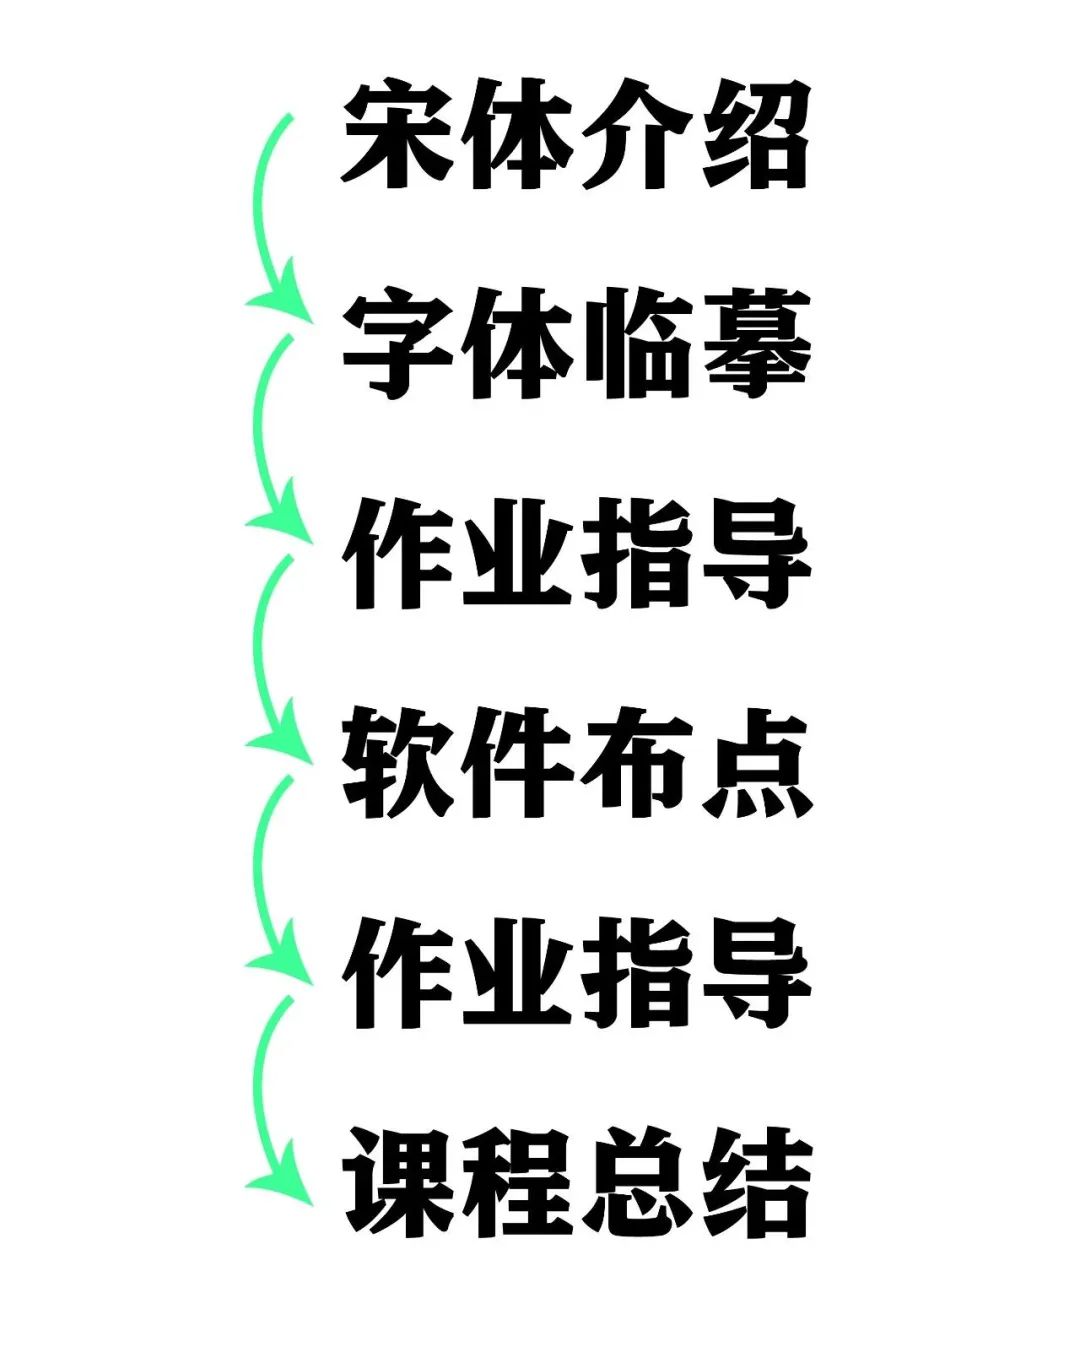 汉仪明星课堂丨中文字体设计培训课程